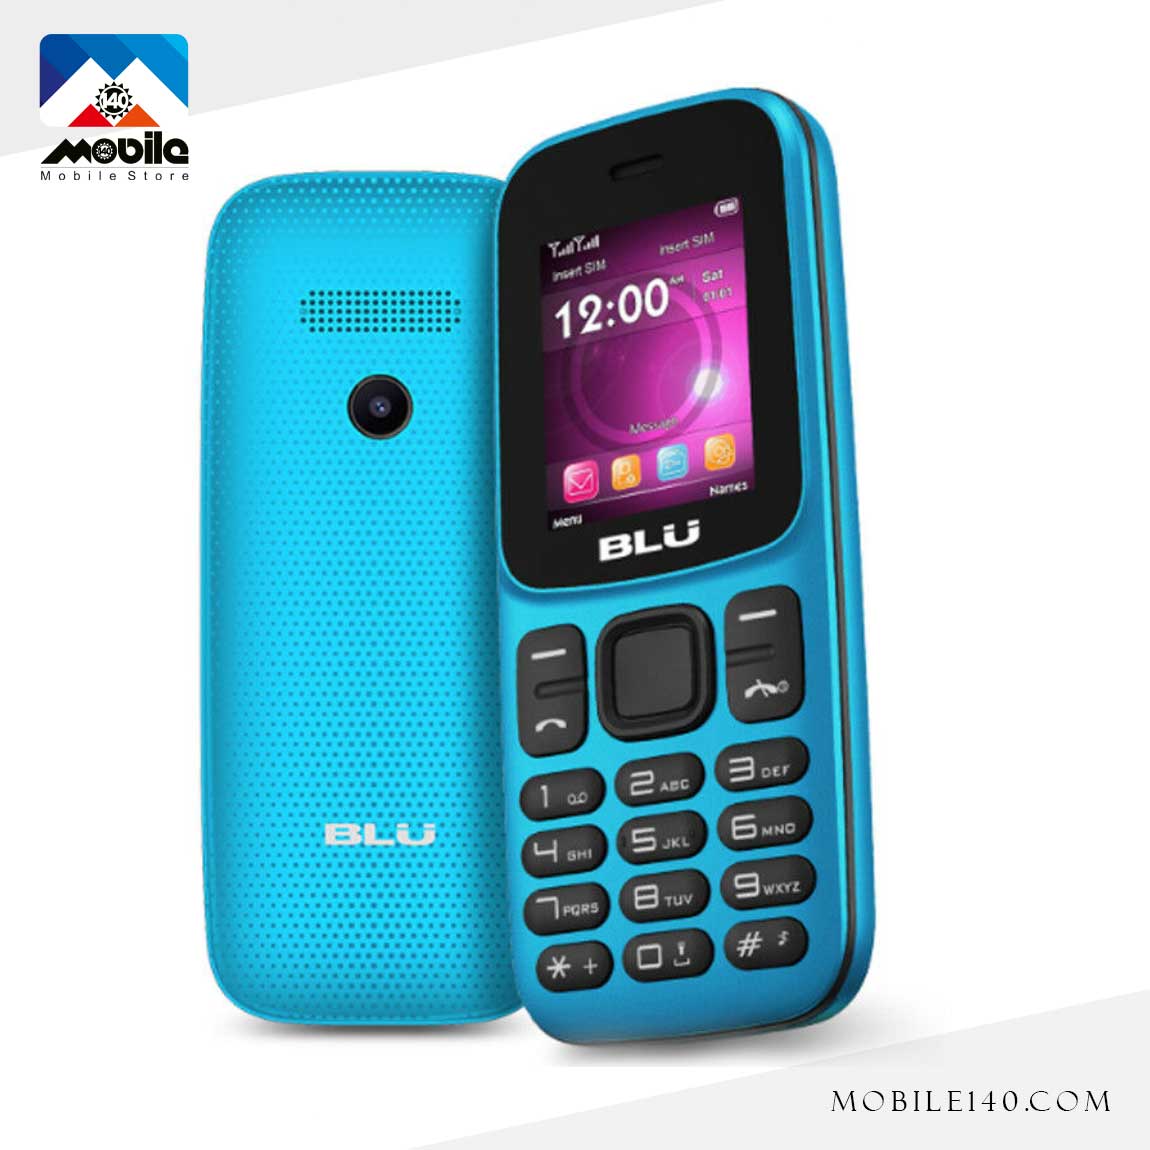 Blu Z5 Mobile Phone 2